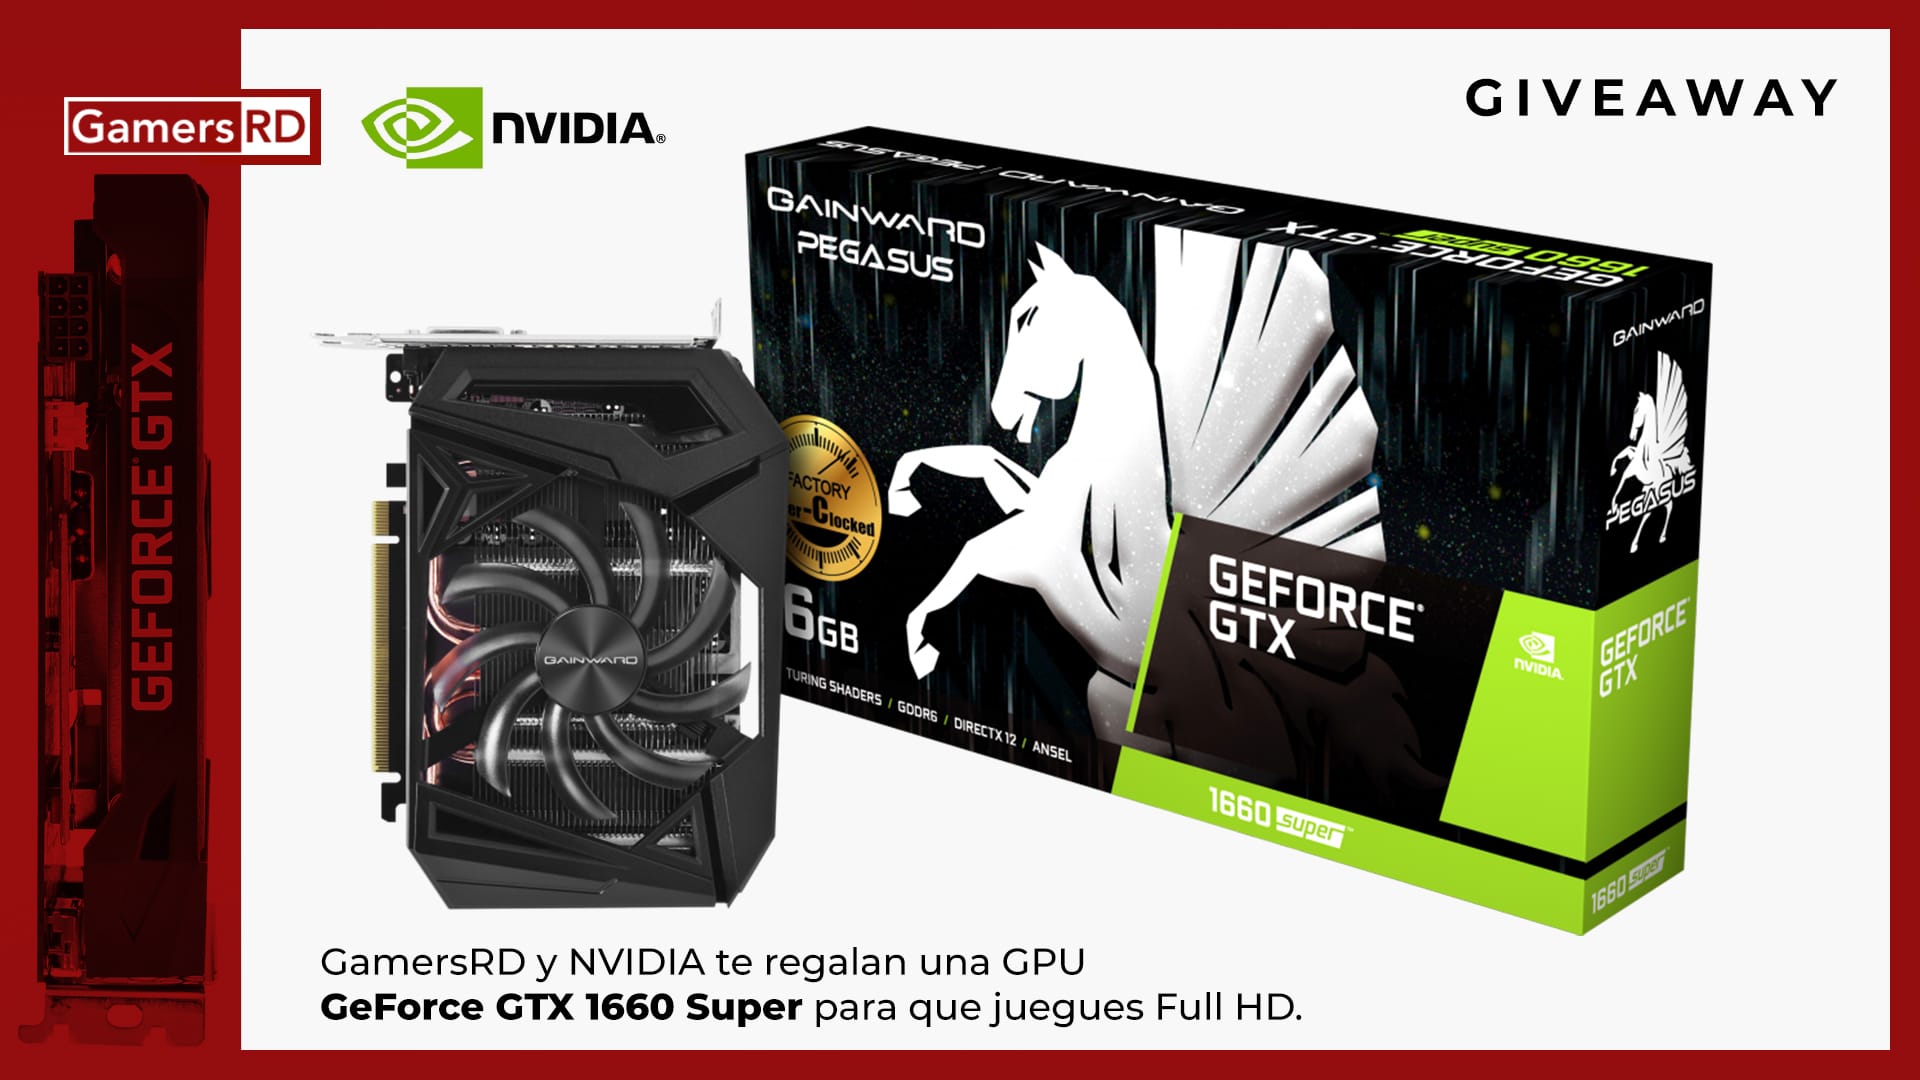 GamersRD & NVIDIA te regalan una GPU Geforce GTX 1660 SUPER